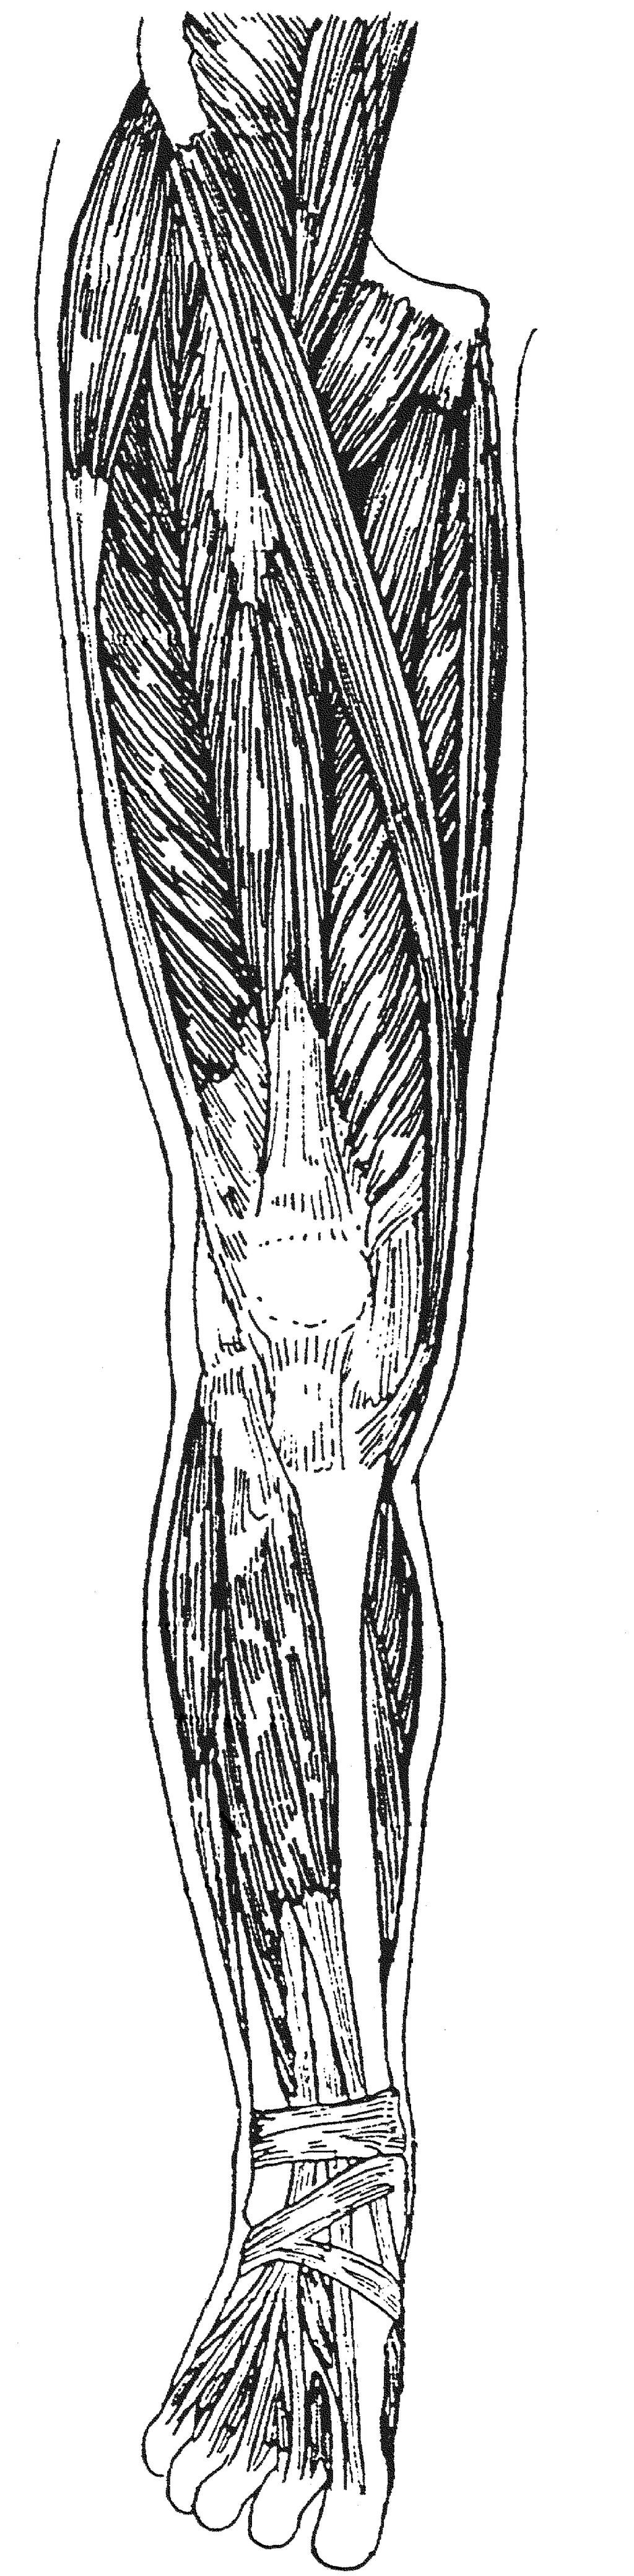 Muskeln der unteren Extremität Übersicht I Iliacus Psoas Sartorius Tensor fasciae latae Vastus intermedius Rectus femoris Vastus lateralis